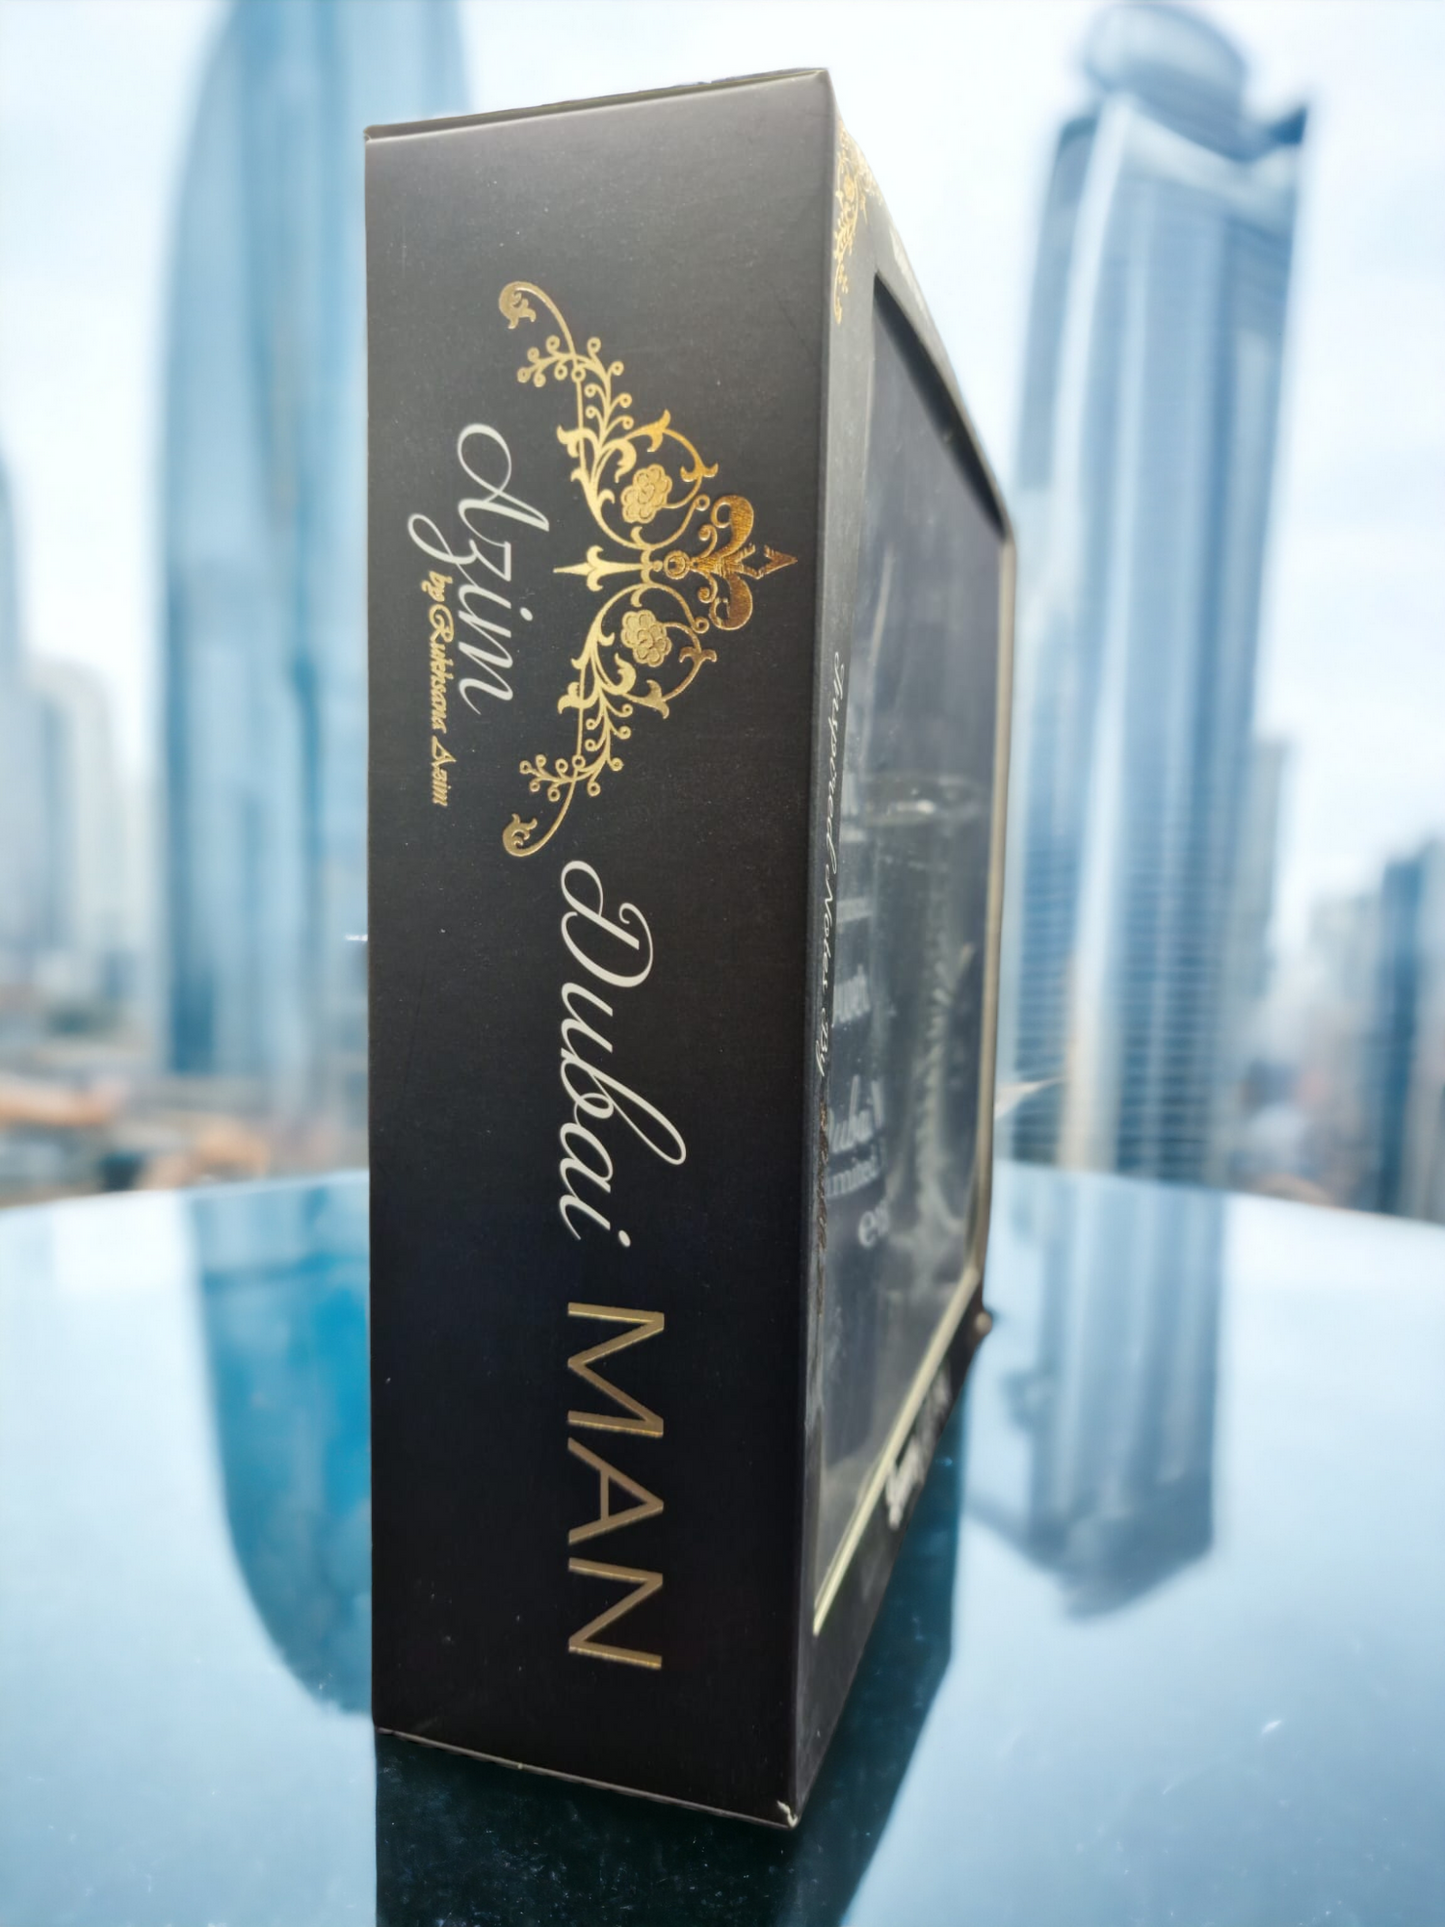 Azim Fragrance House DUBAI MAN 2pc Gift Set Shaikh No.77 100ml EDP & 150ml DUBAI MAN Shaikh No.77 Shower Gel Mens